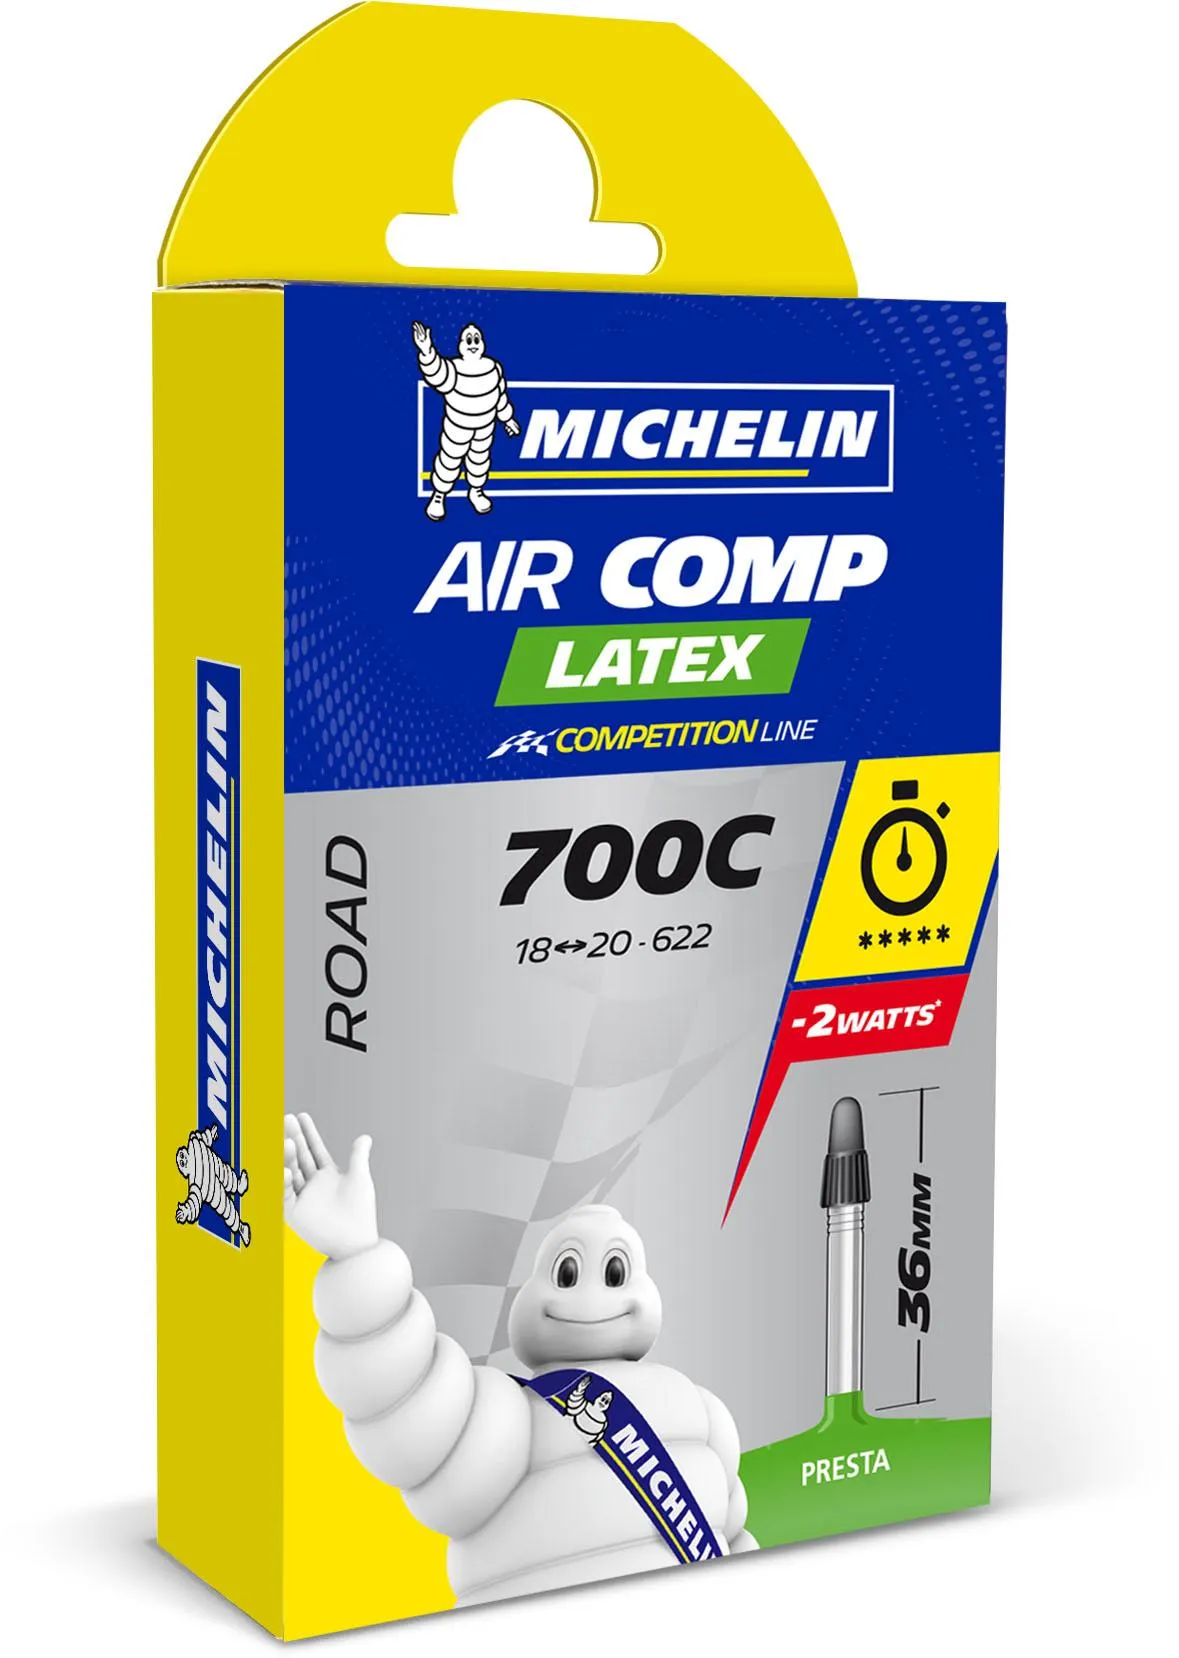 Michelin A1 AirComp Latex Road Bike Tube, Green